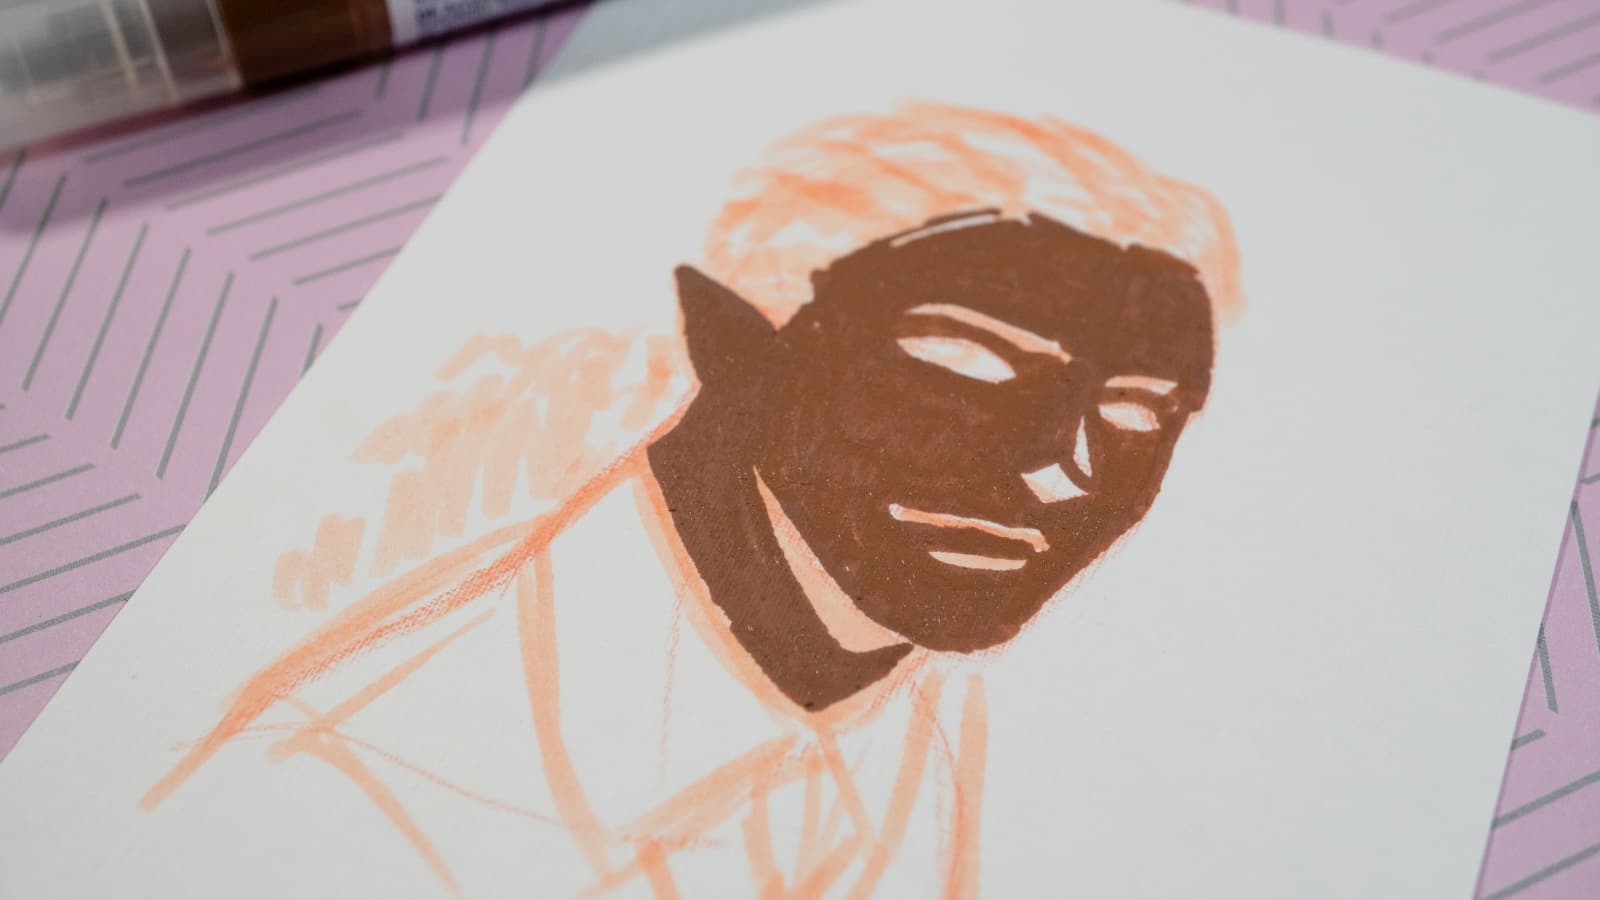 Eine Skizze des Gesichts einer Person, dargestellt in minimalistischen Pinselstrichen mit weißen und rotbraunen Farben auf einem Stück strukturiertem Papier.